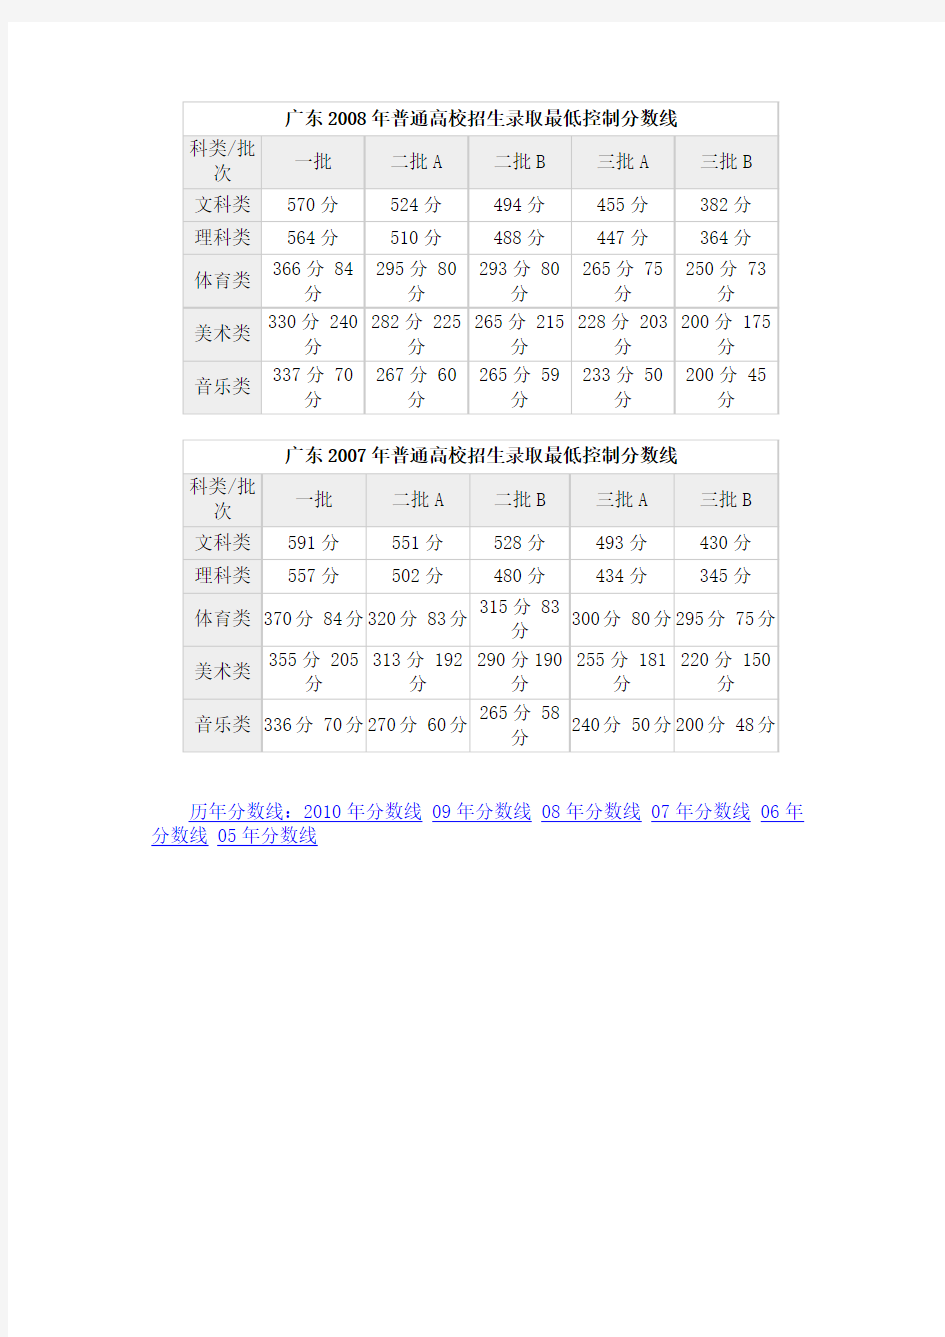 广东2011年高考录取分数线公布